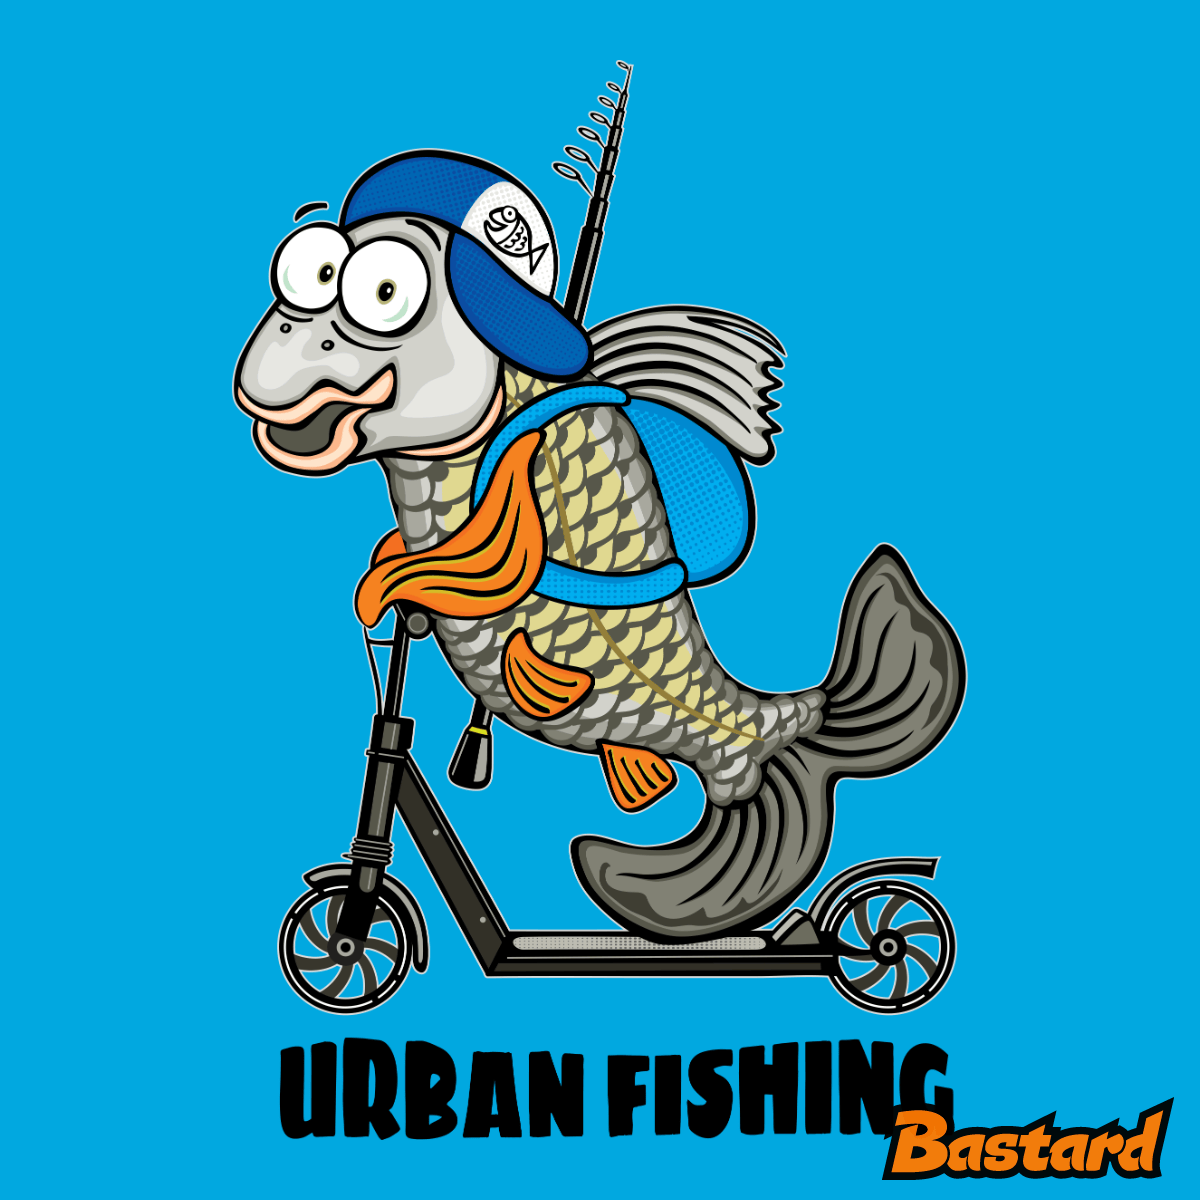 Urban fishing